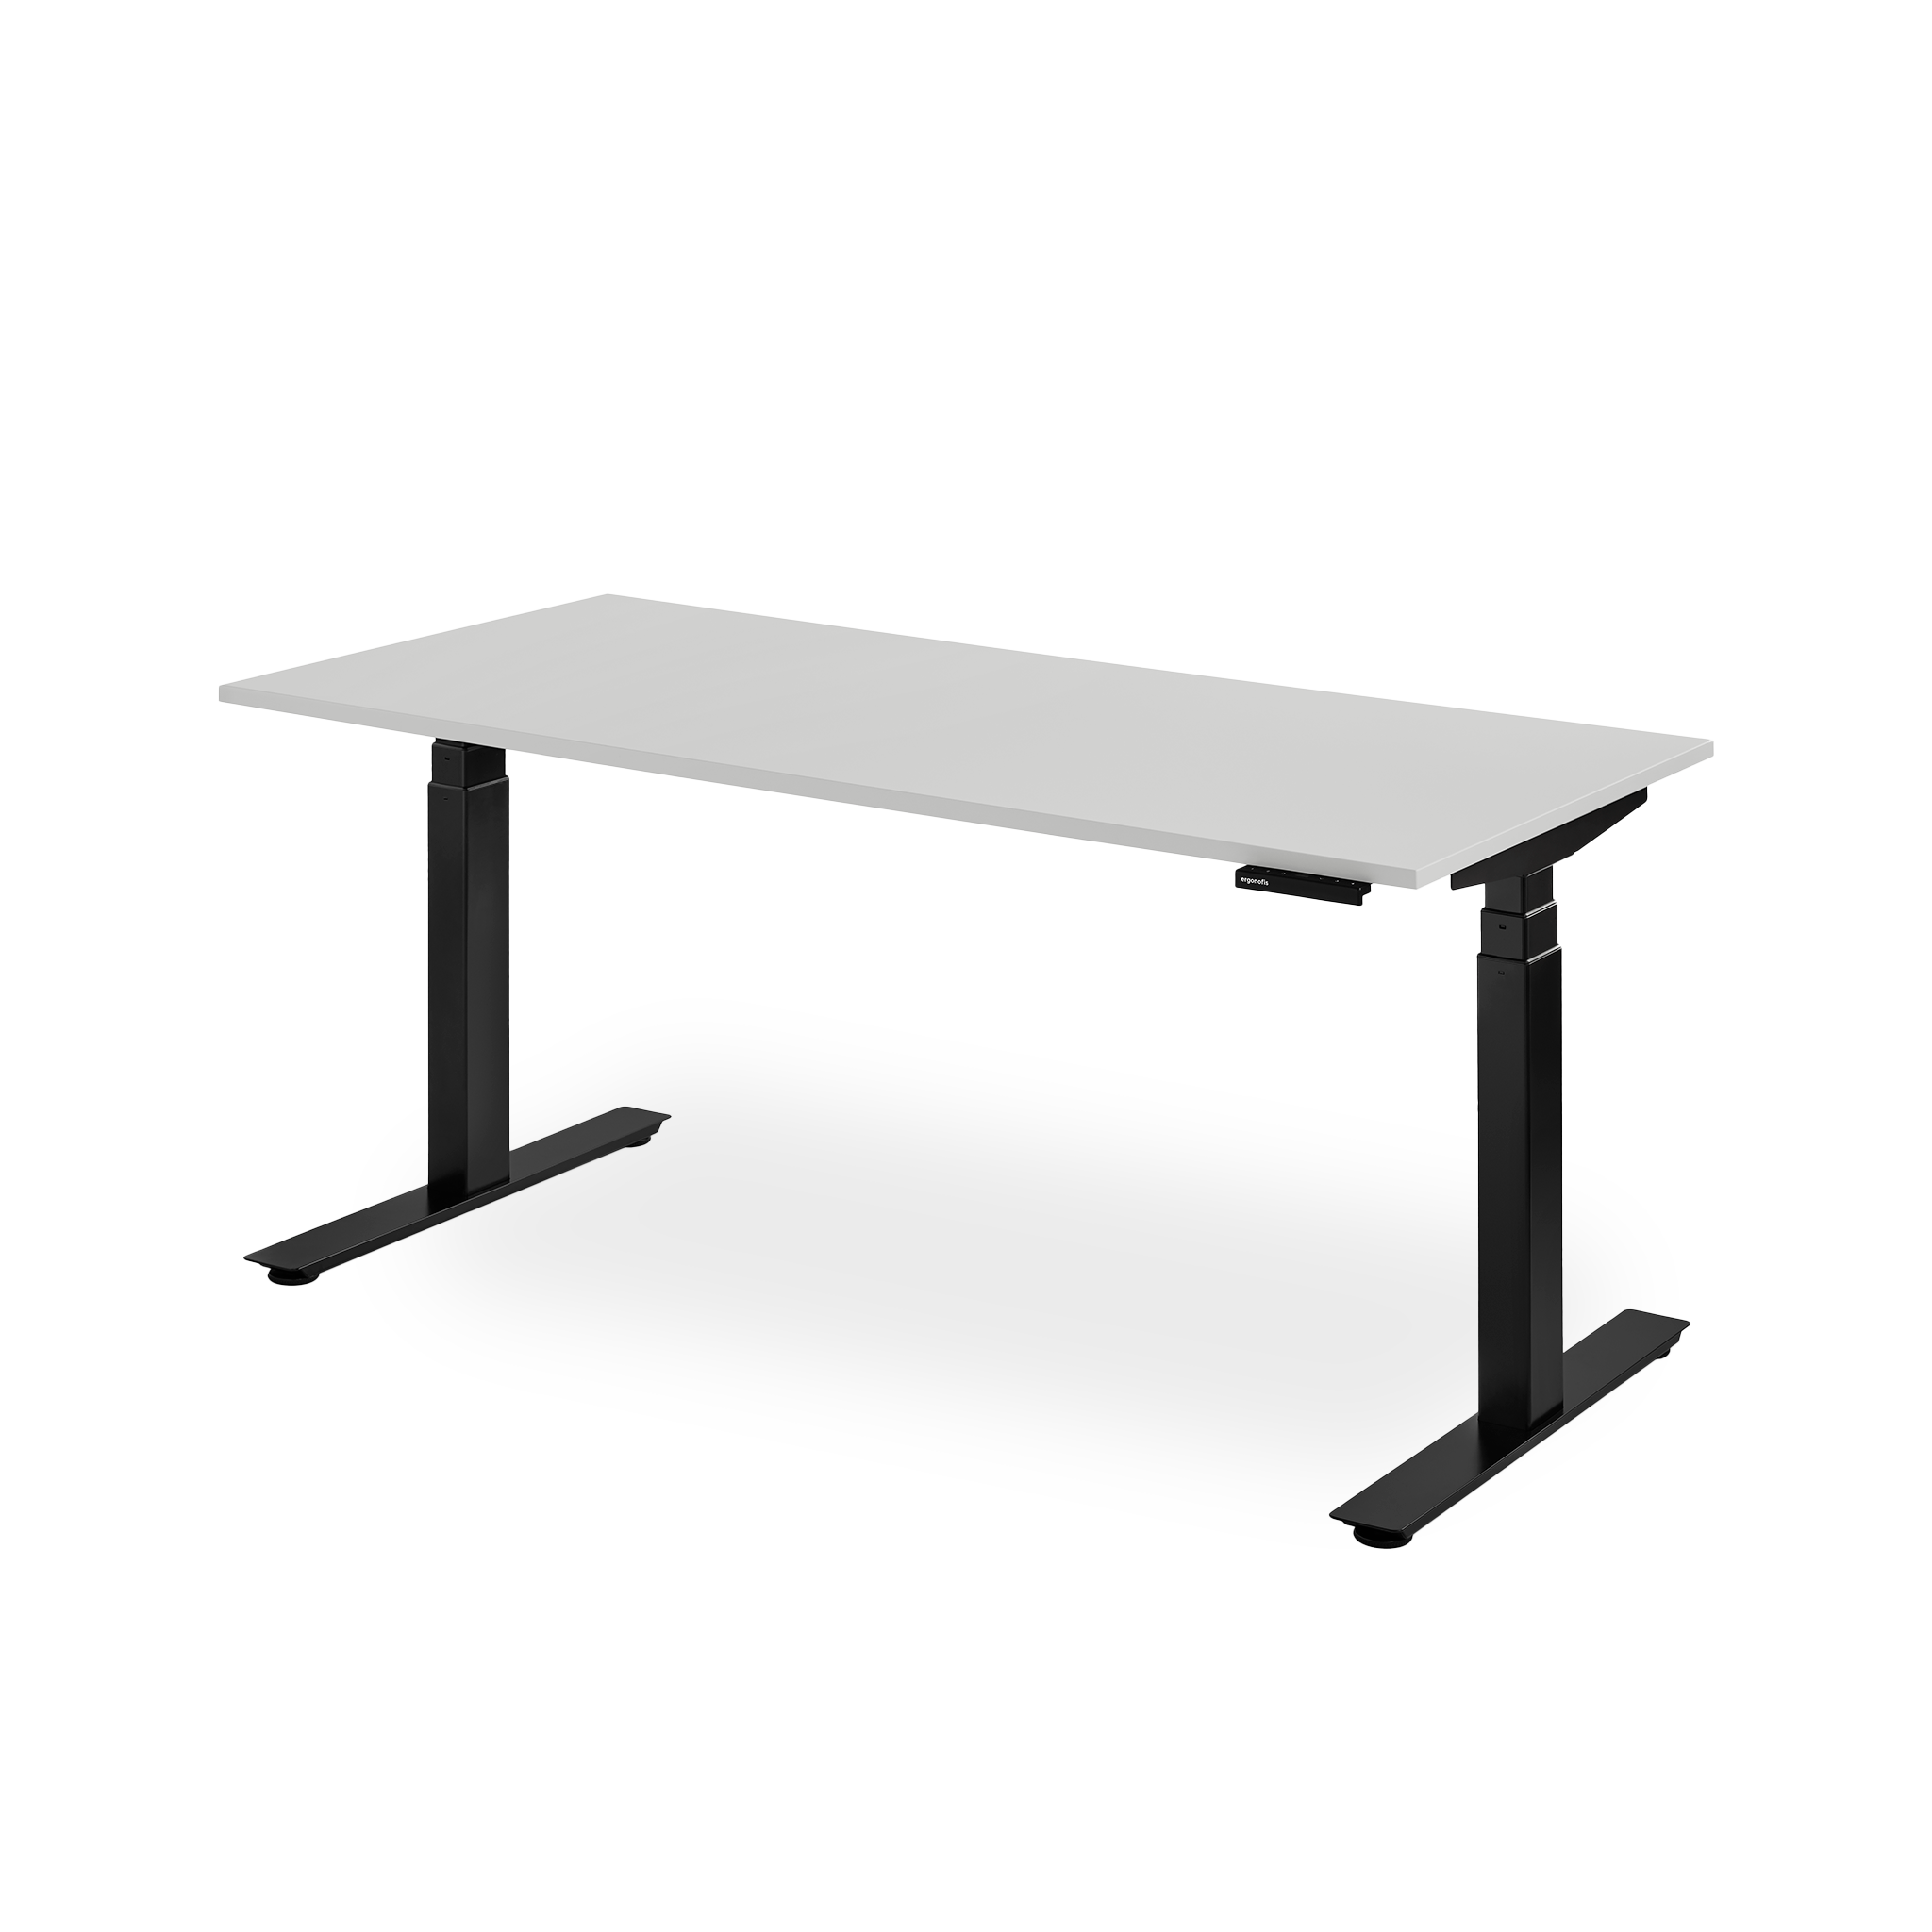 Standing Desk